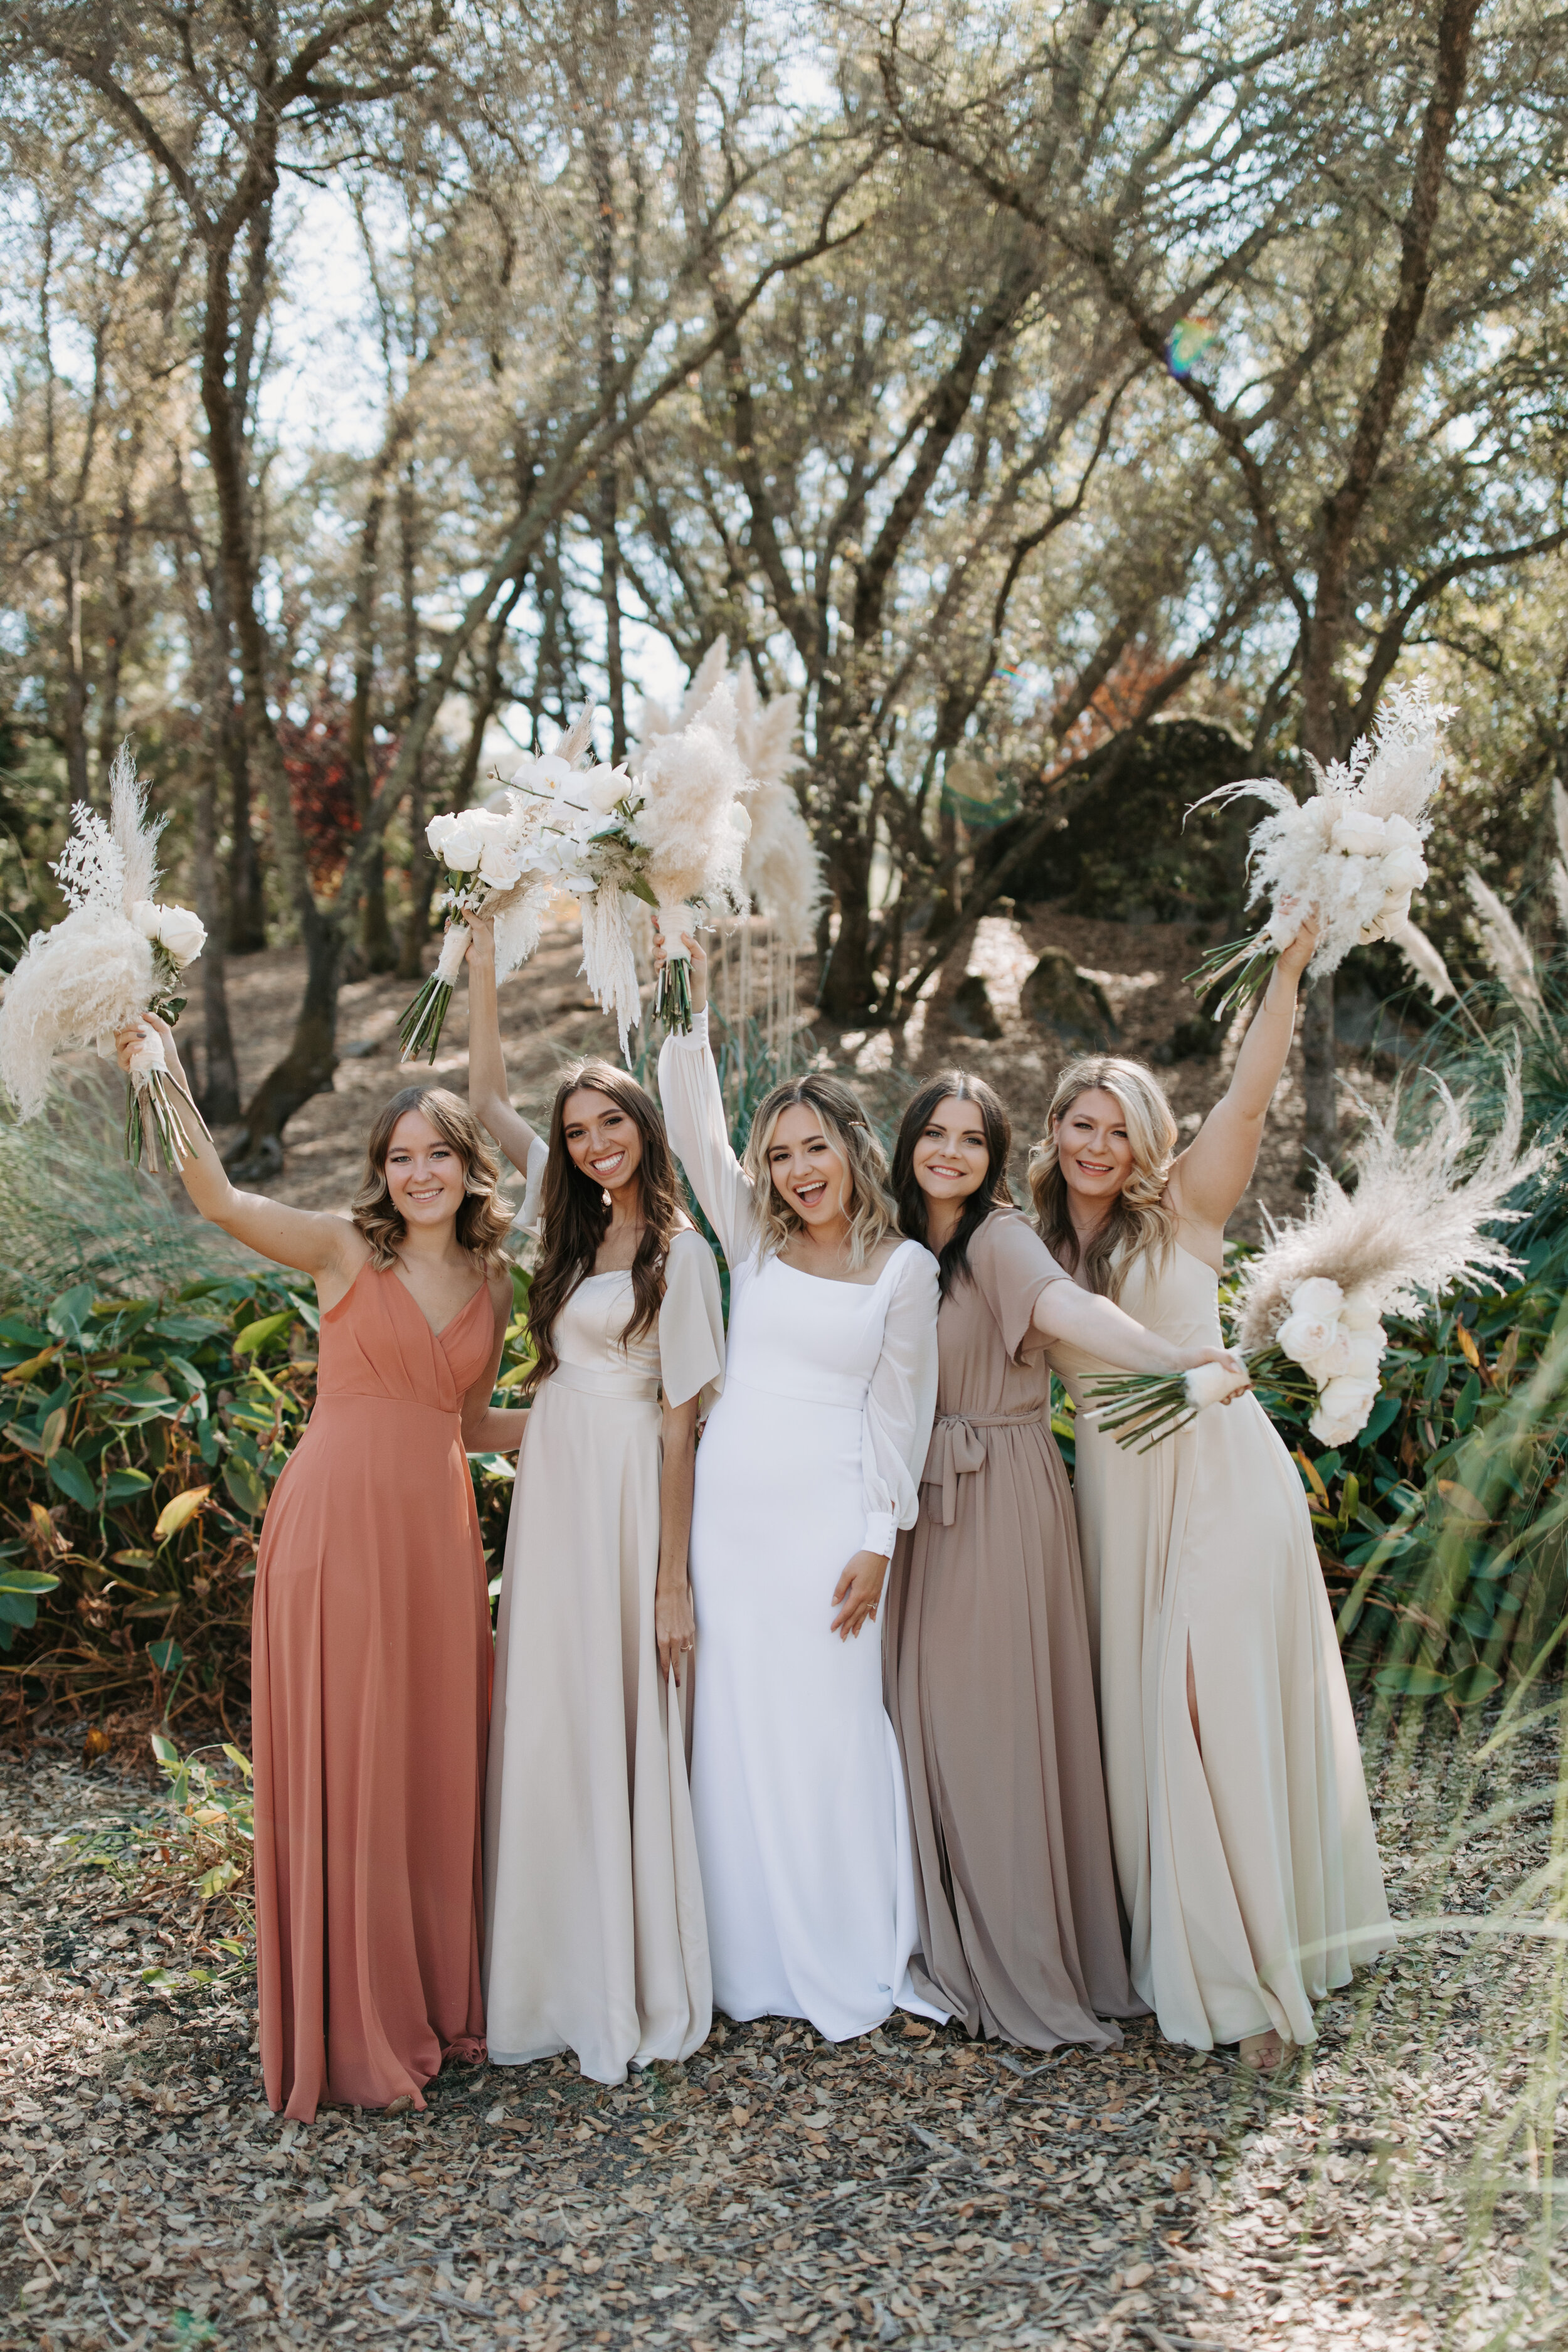  Alyssa Kristin Sydney Wedding Dress a&amp;be bridal shop Sacramento 